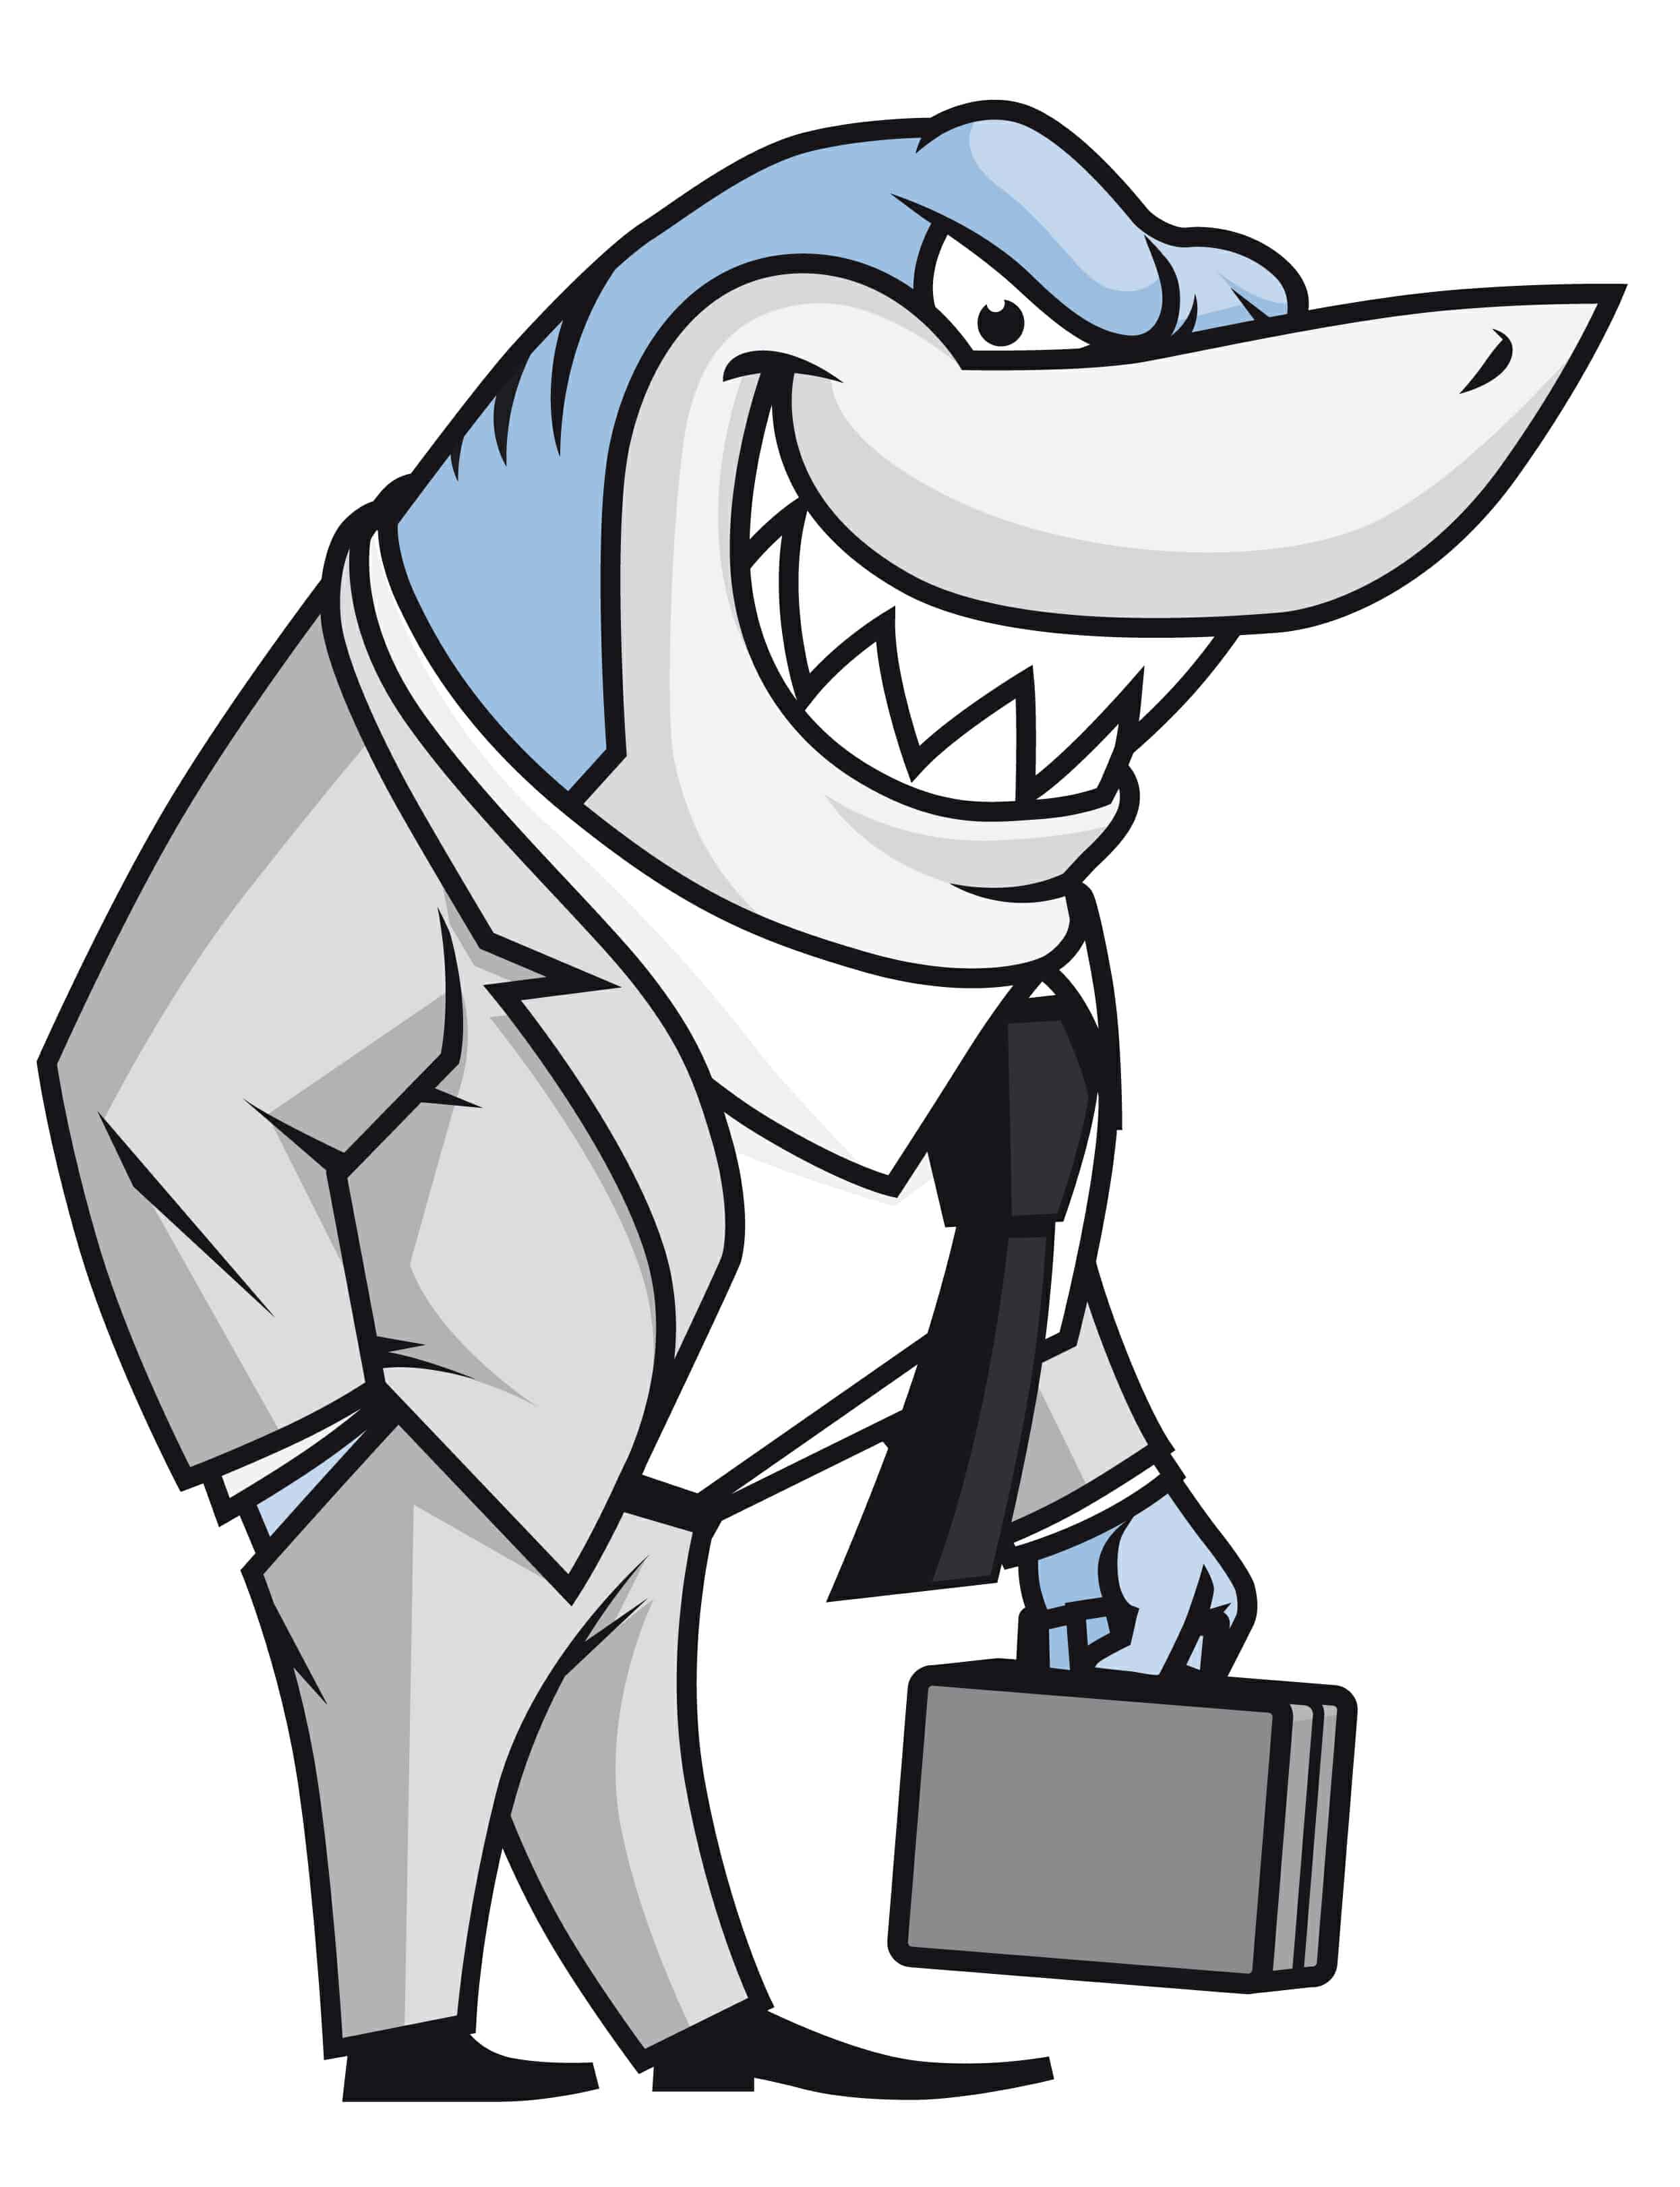 Image result for cartoon attorney shark